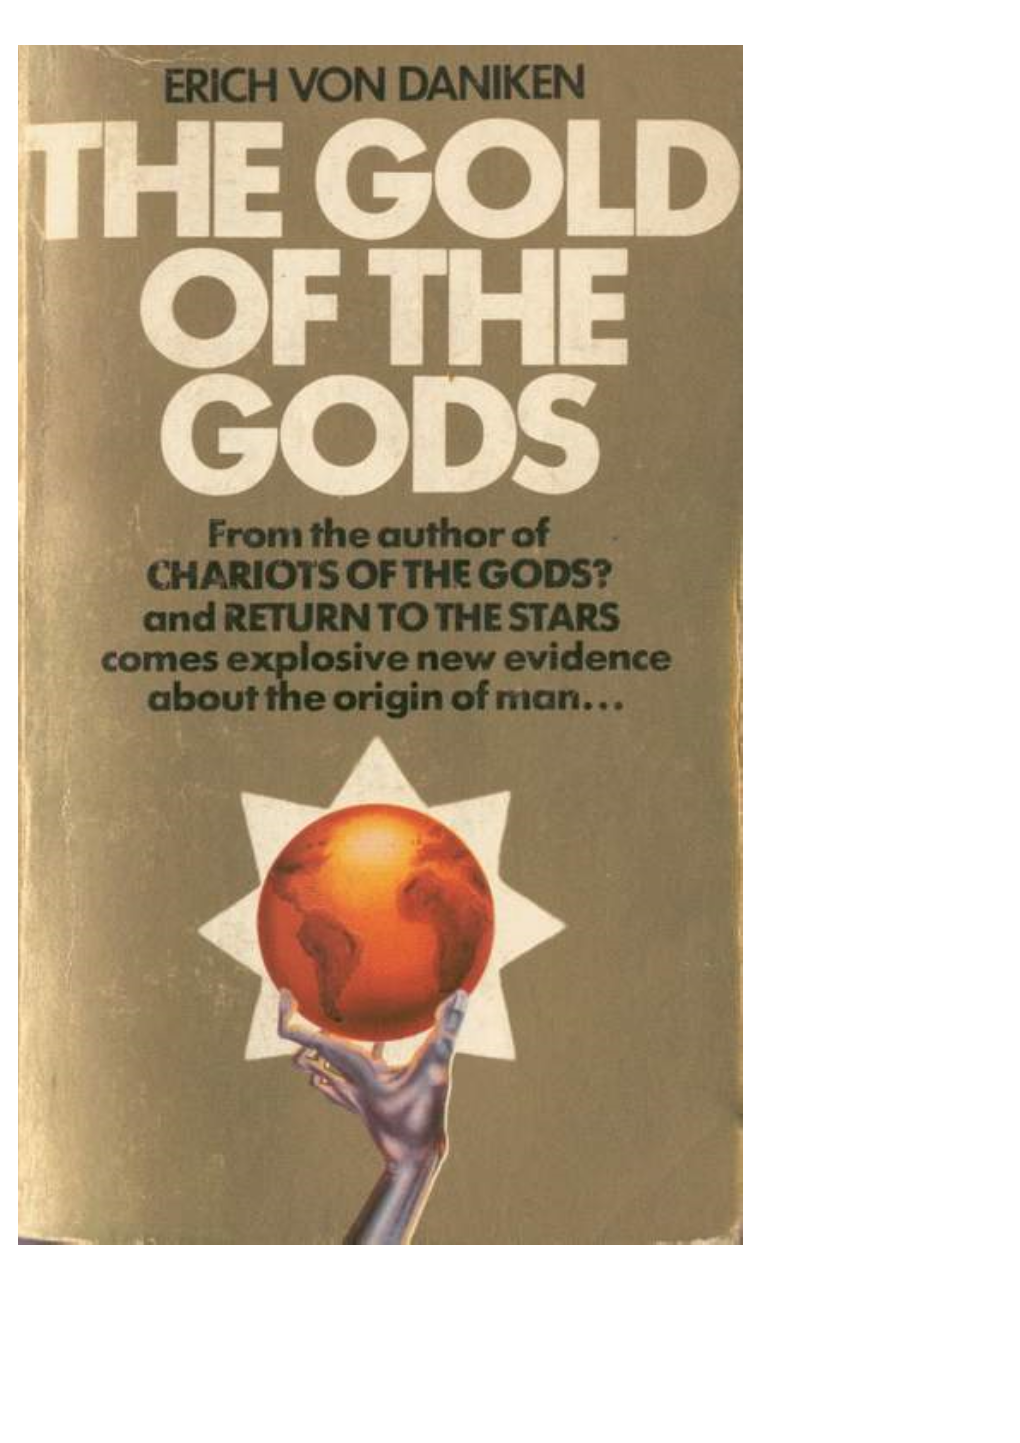 The Gold of the Gods by Erich Von Daniken